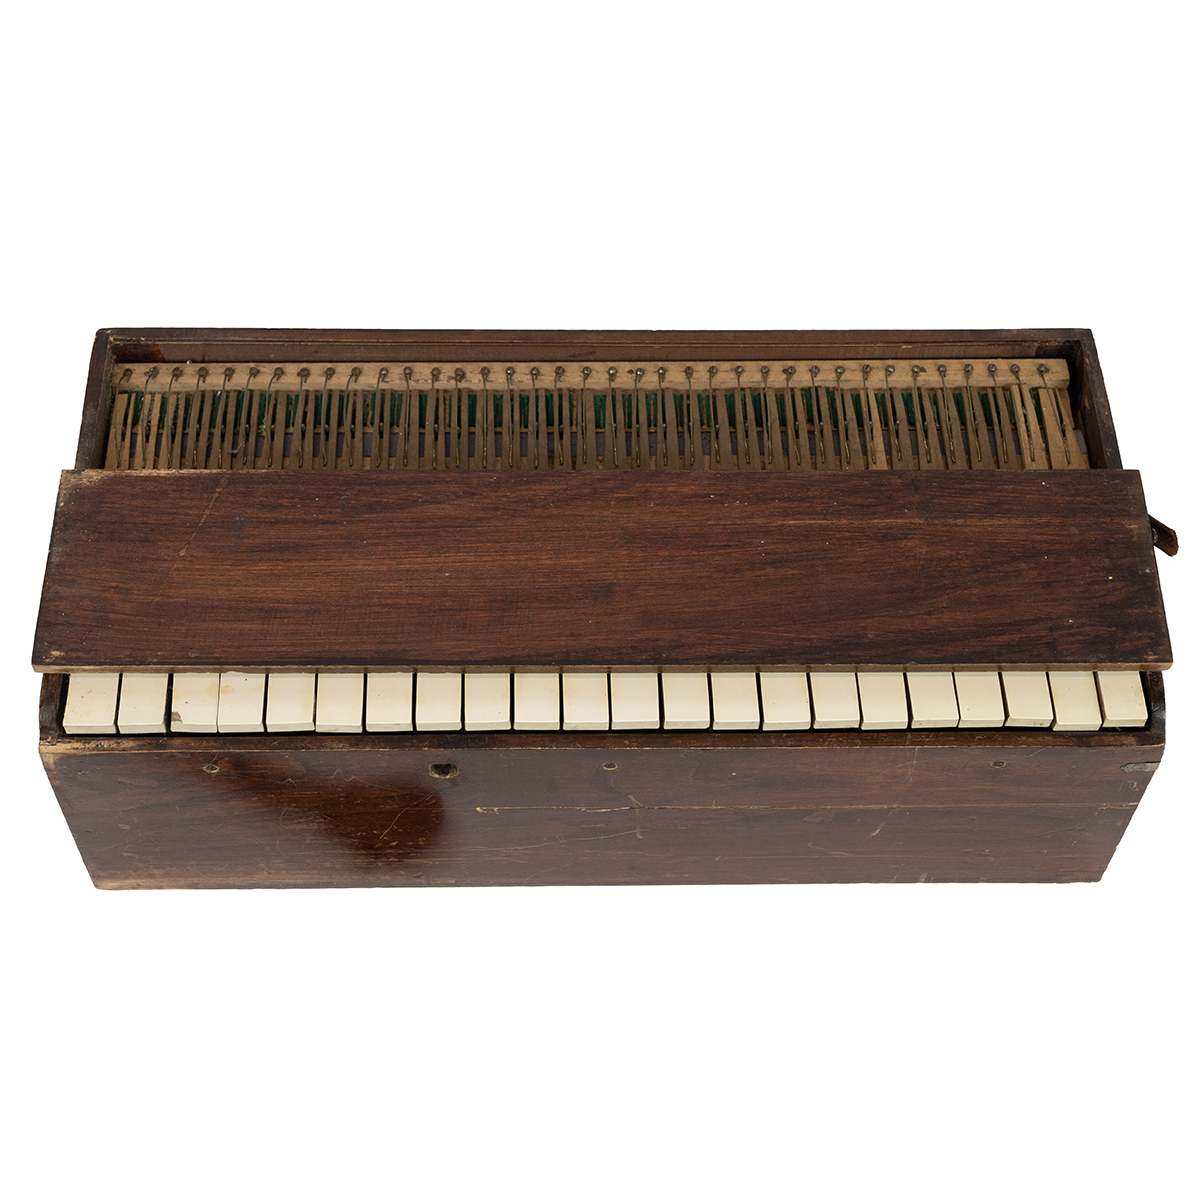 W. Brunt & Sons portable Pump Organ in oak carry case c1900. W 55cm, D 27cm, H 20cm. (M) - Image 2 of 4